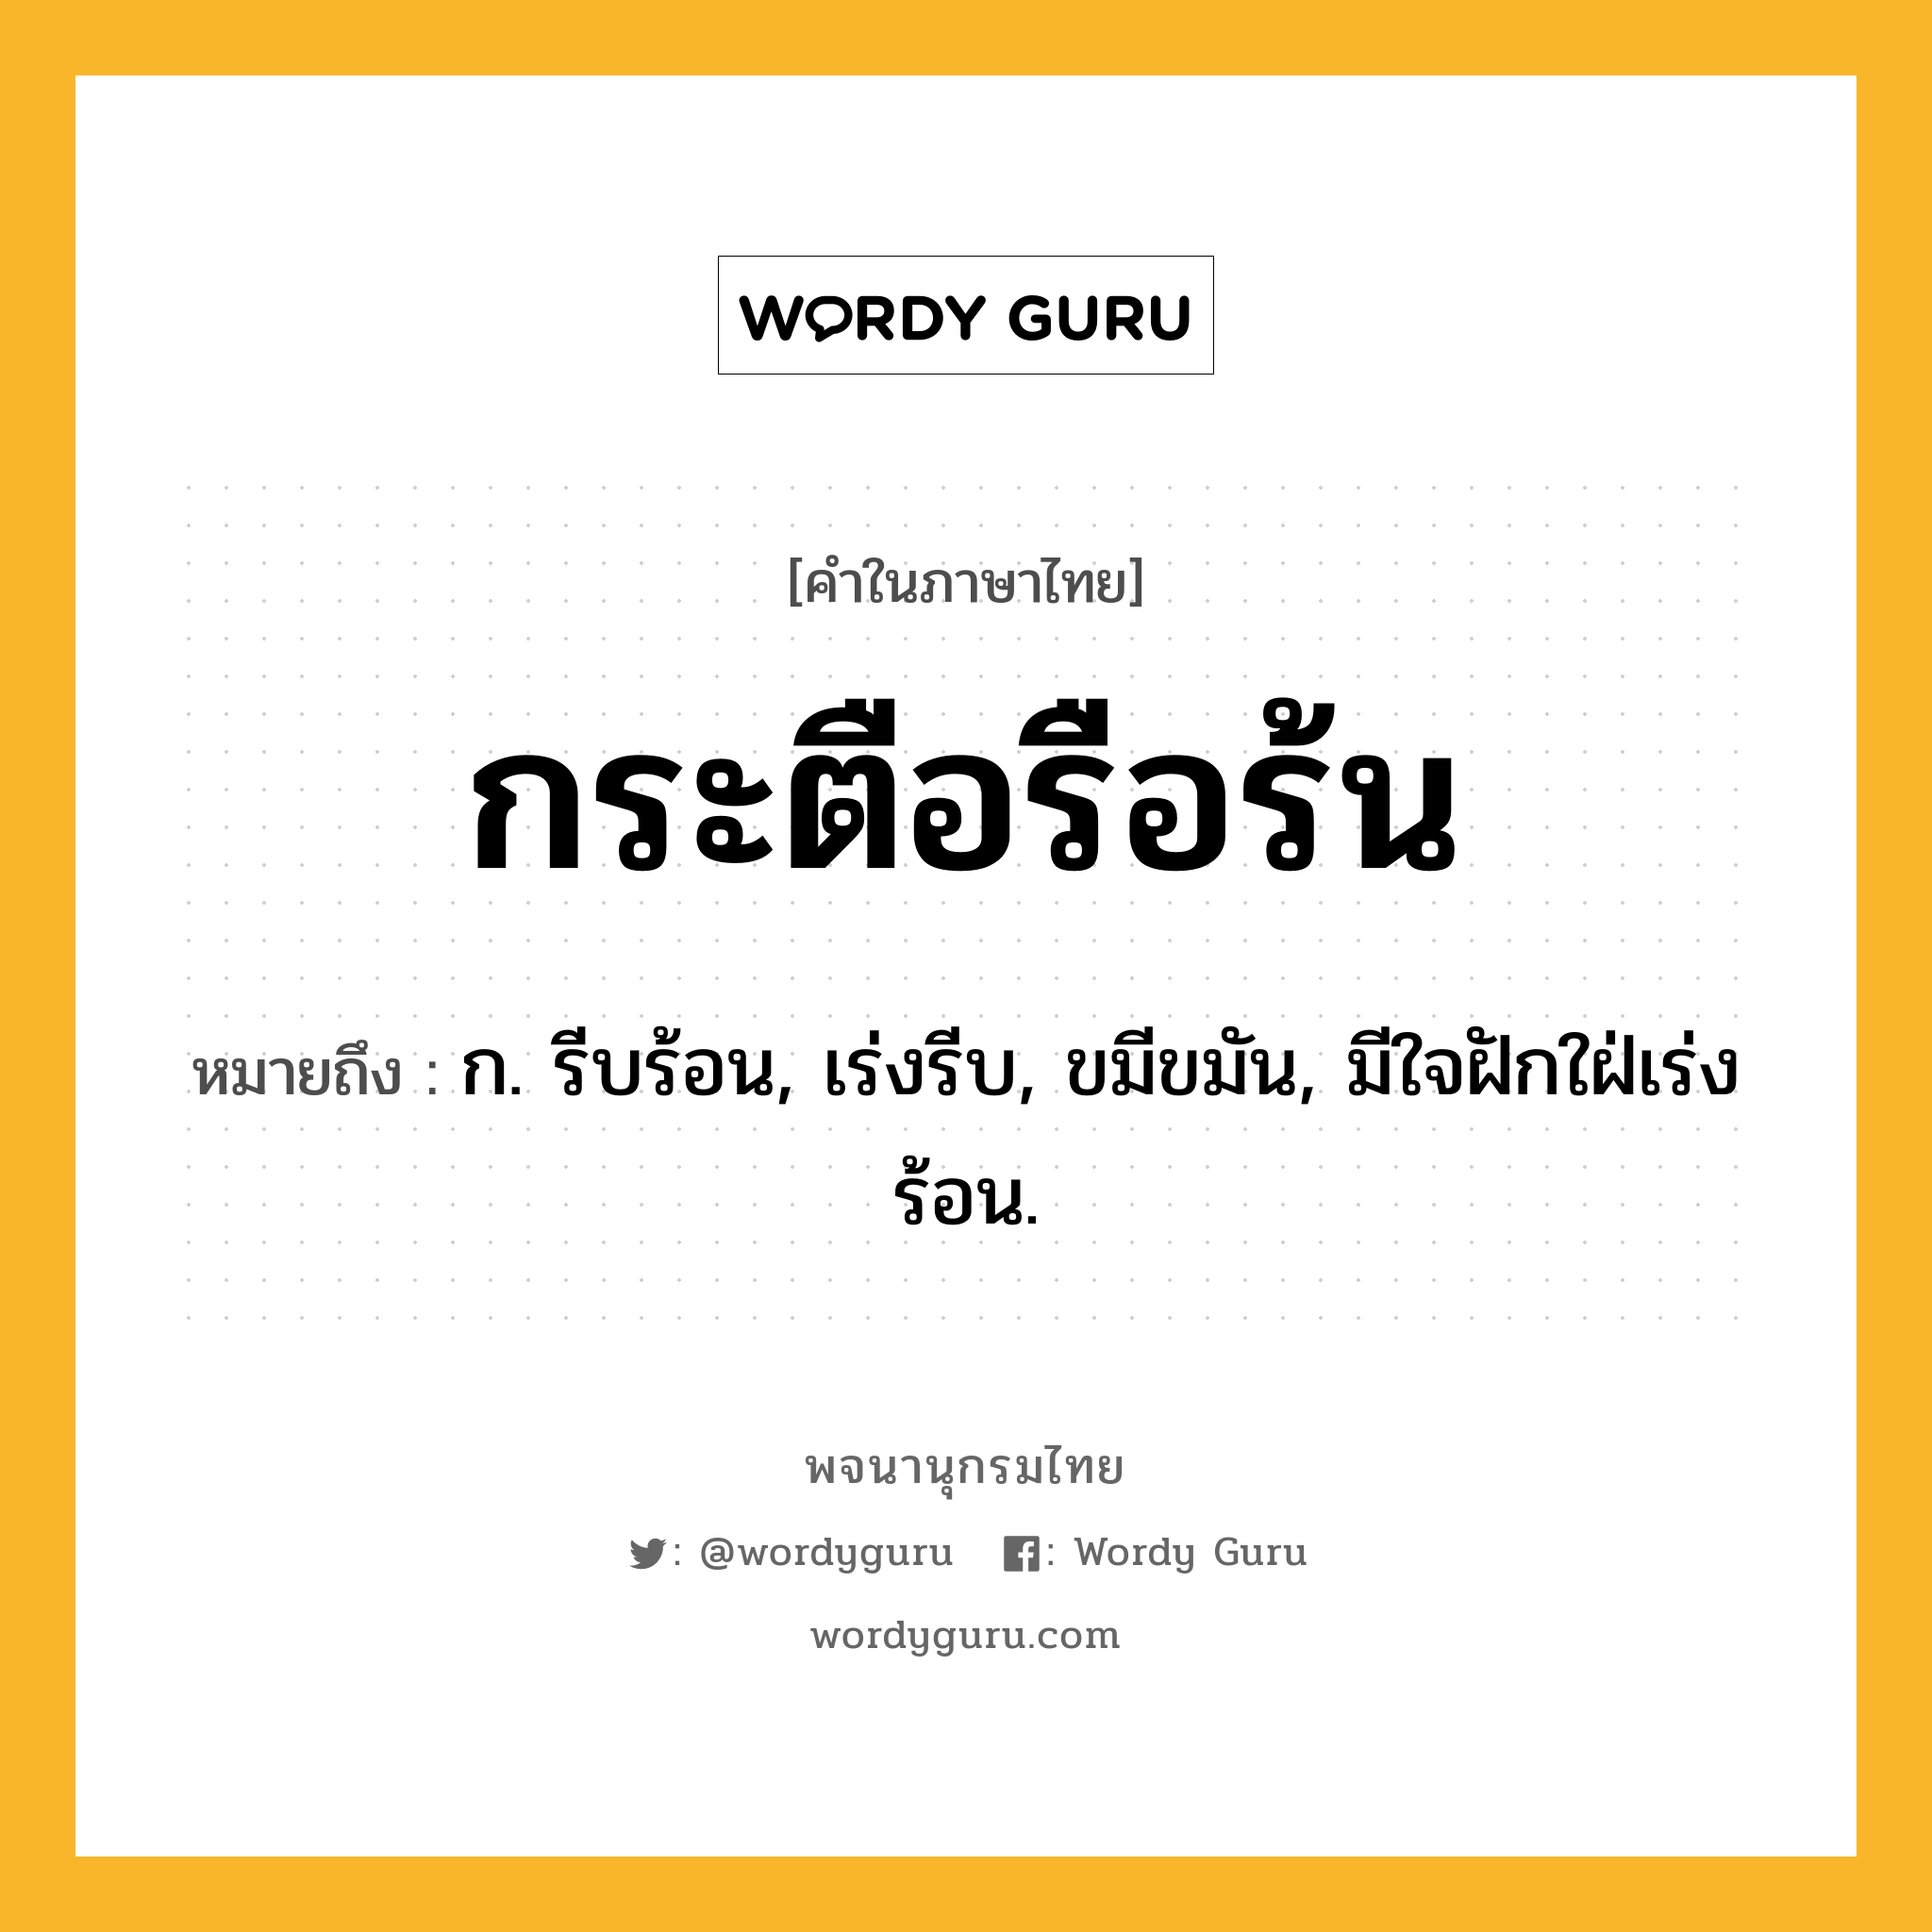 กระตือรือร้น หมายถึงอะไร?, คำในภาษาไทย กระตือรือร้น หมายถึง ก. รีบร้อน, เร่งรีบ, ขมีขมัน, มีใจฝักใฝ่เร่งร้อน.